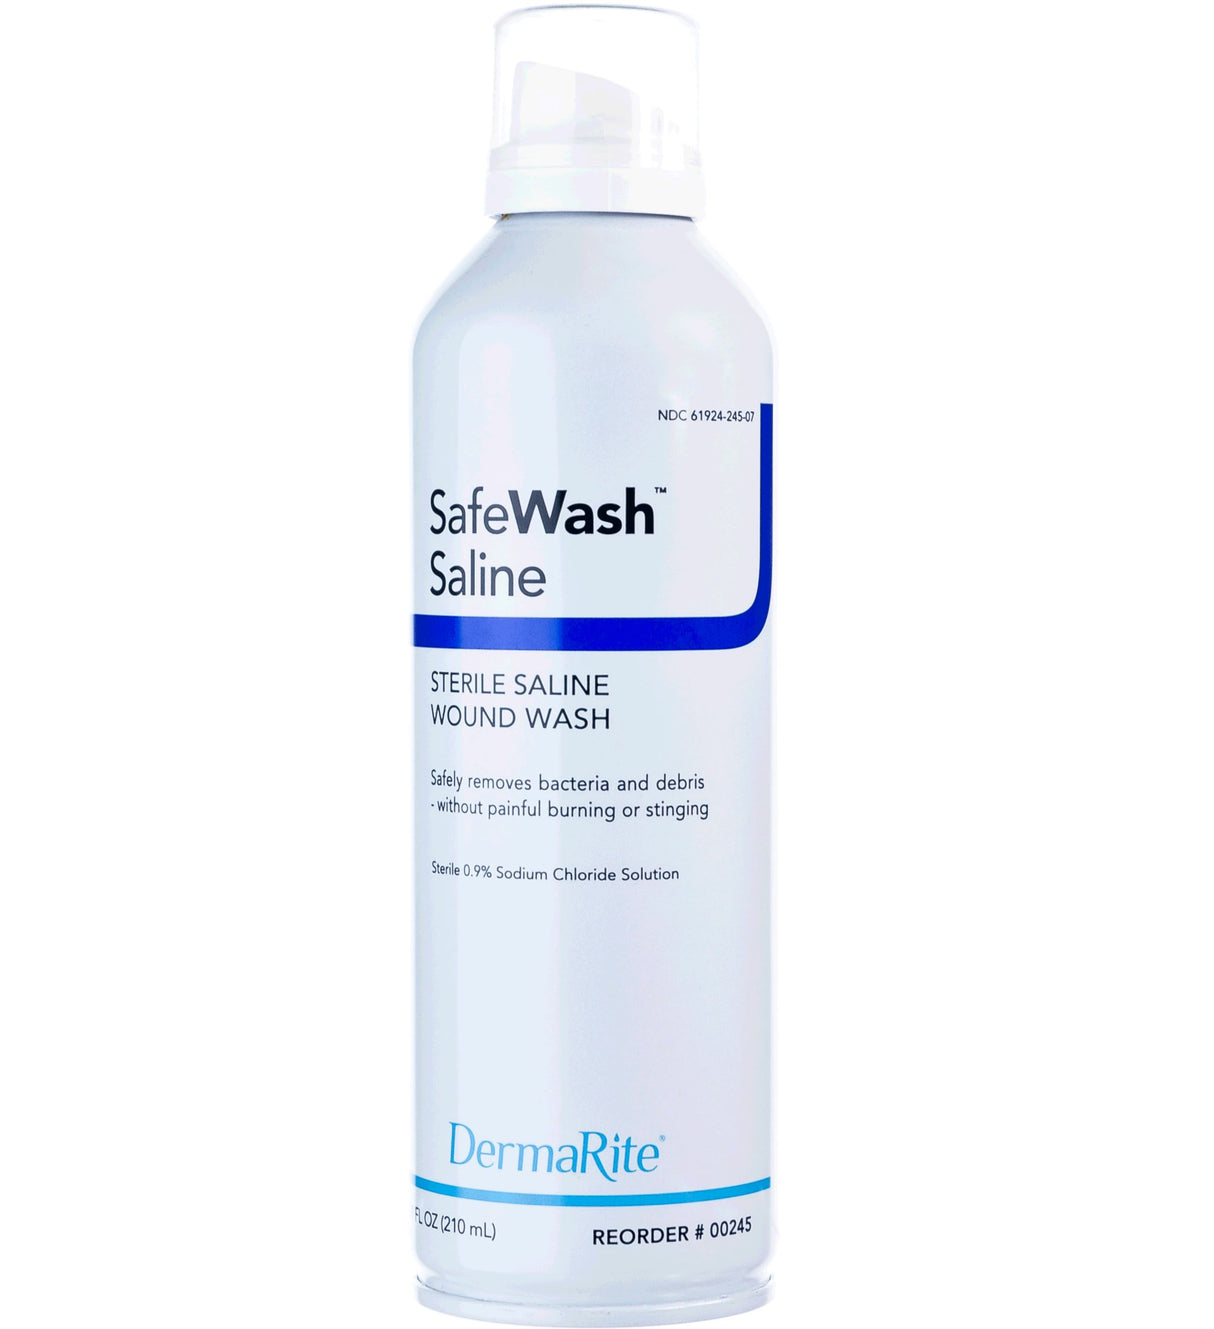 Image of SafeWash Sterile Saline Wound Wash, 7.4 oz